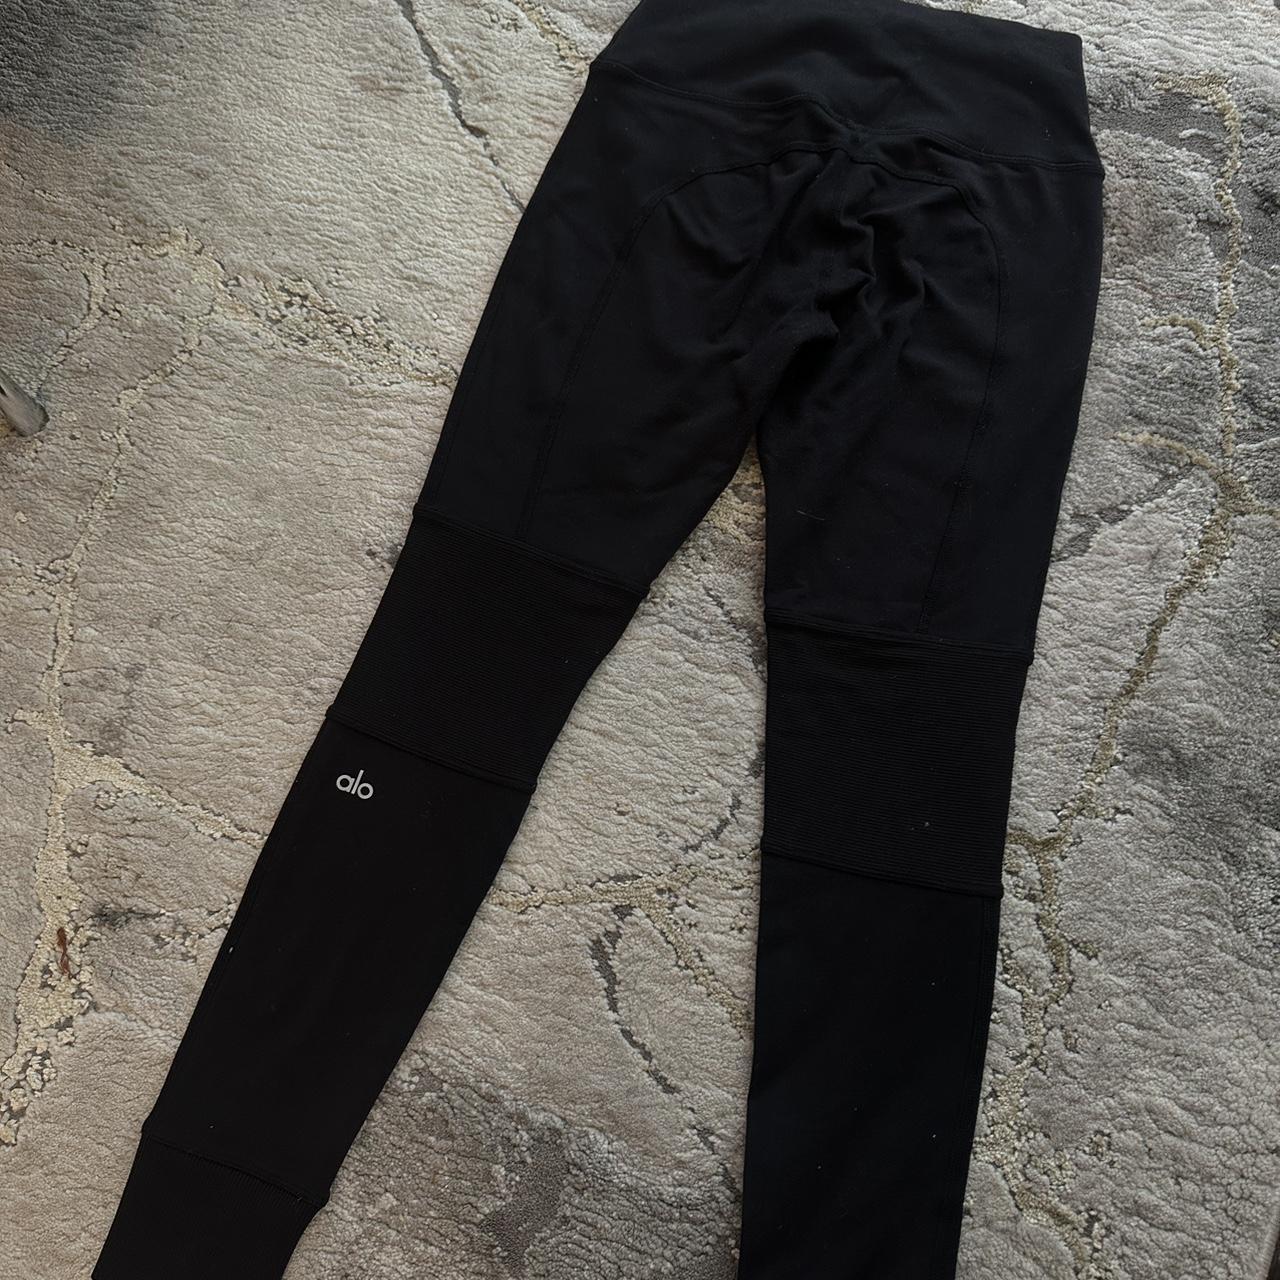 alo high waist black leggings, a staple basic! ♥️... - Depop